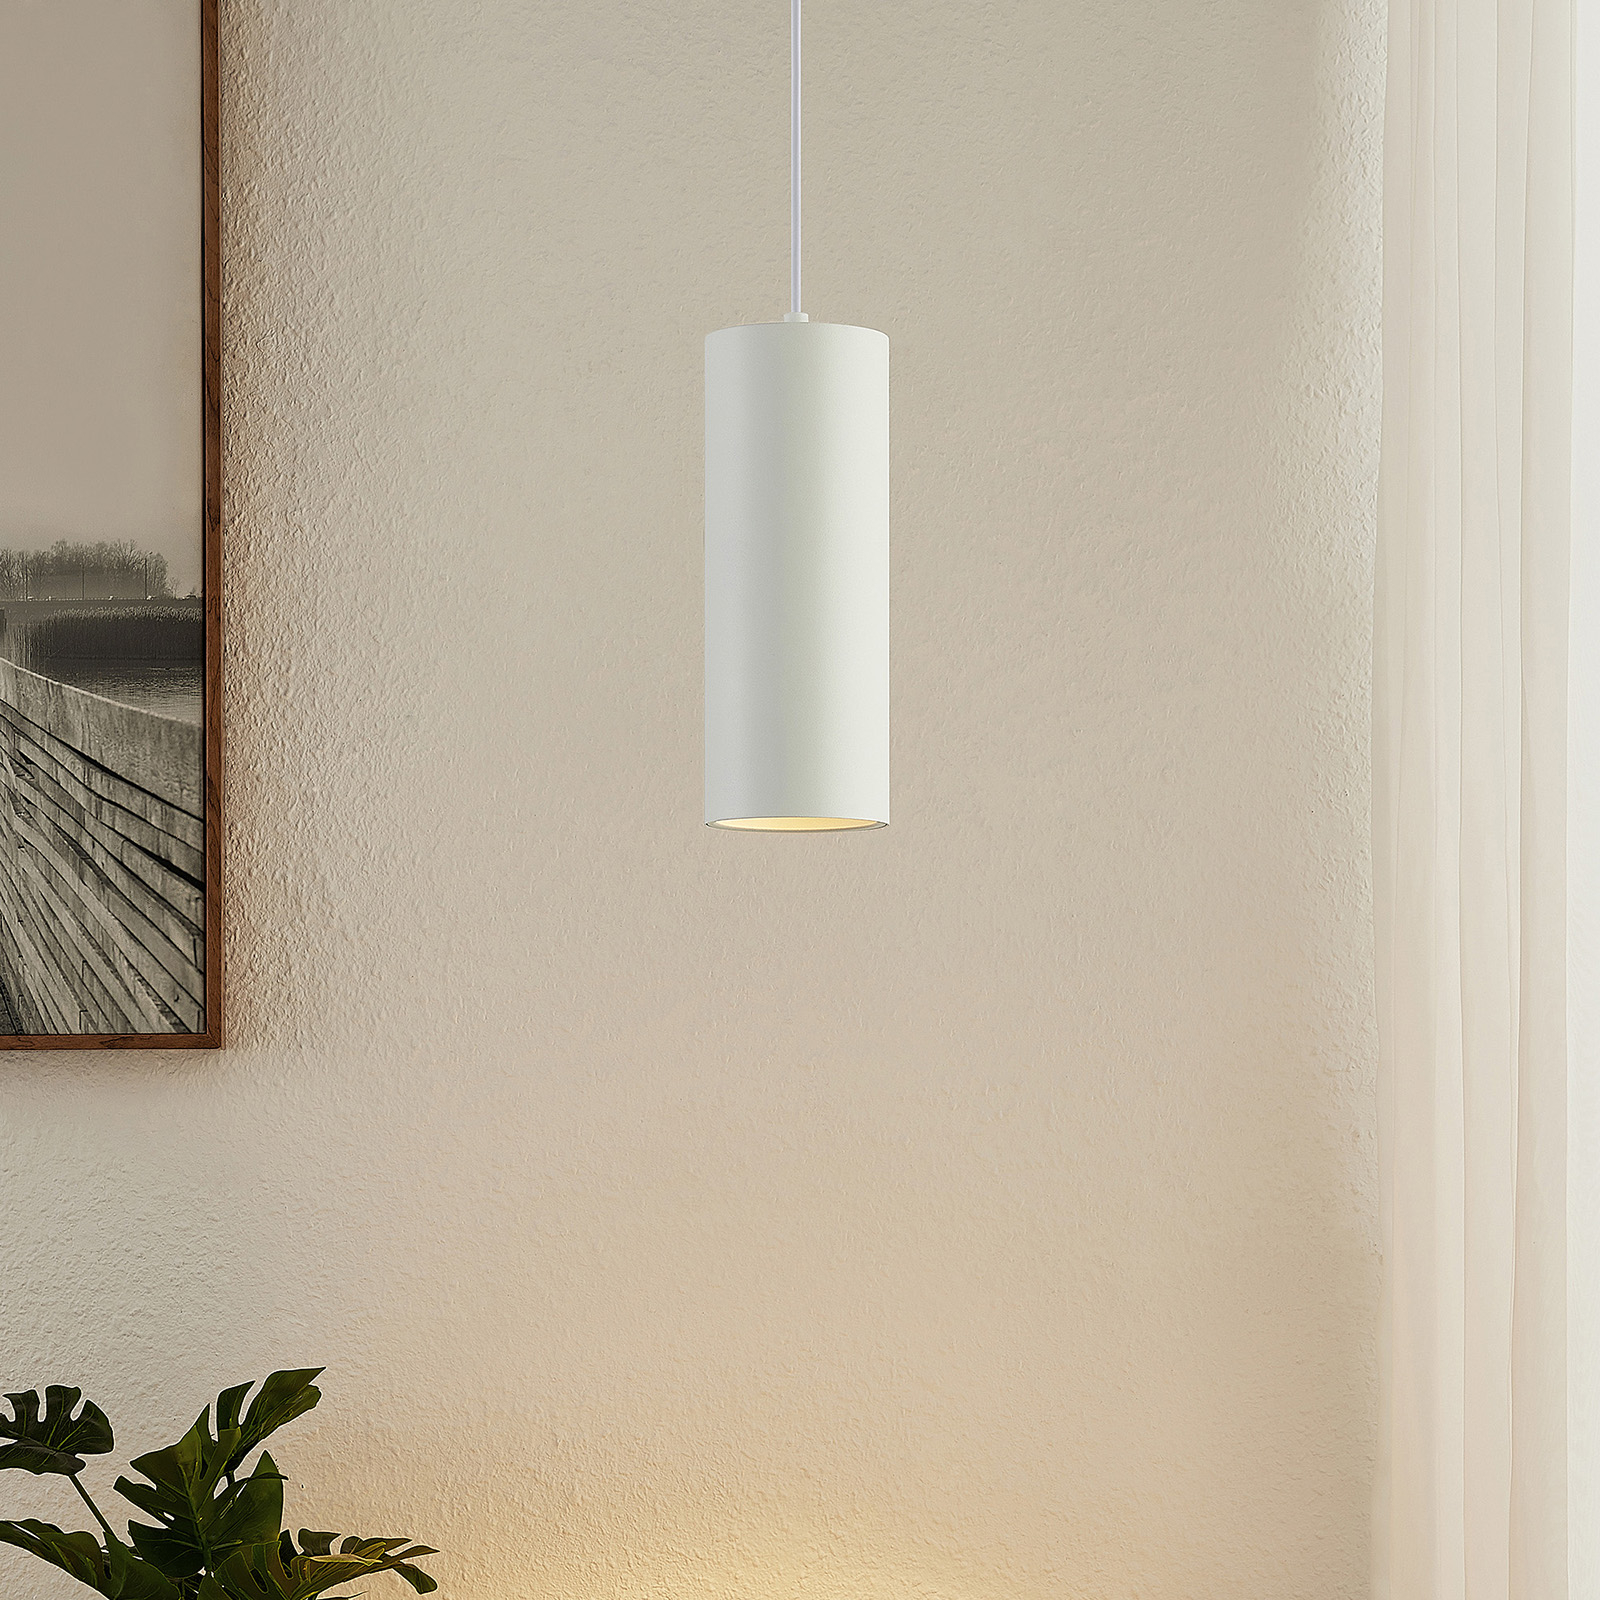 Arcchio Marilena hanging light cylindrical white